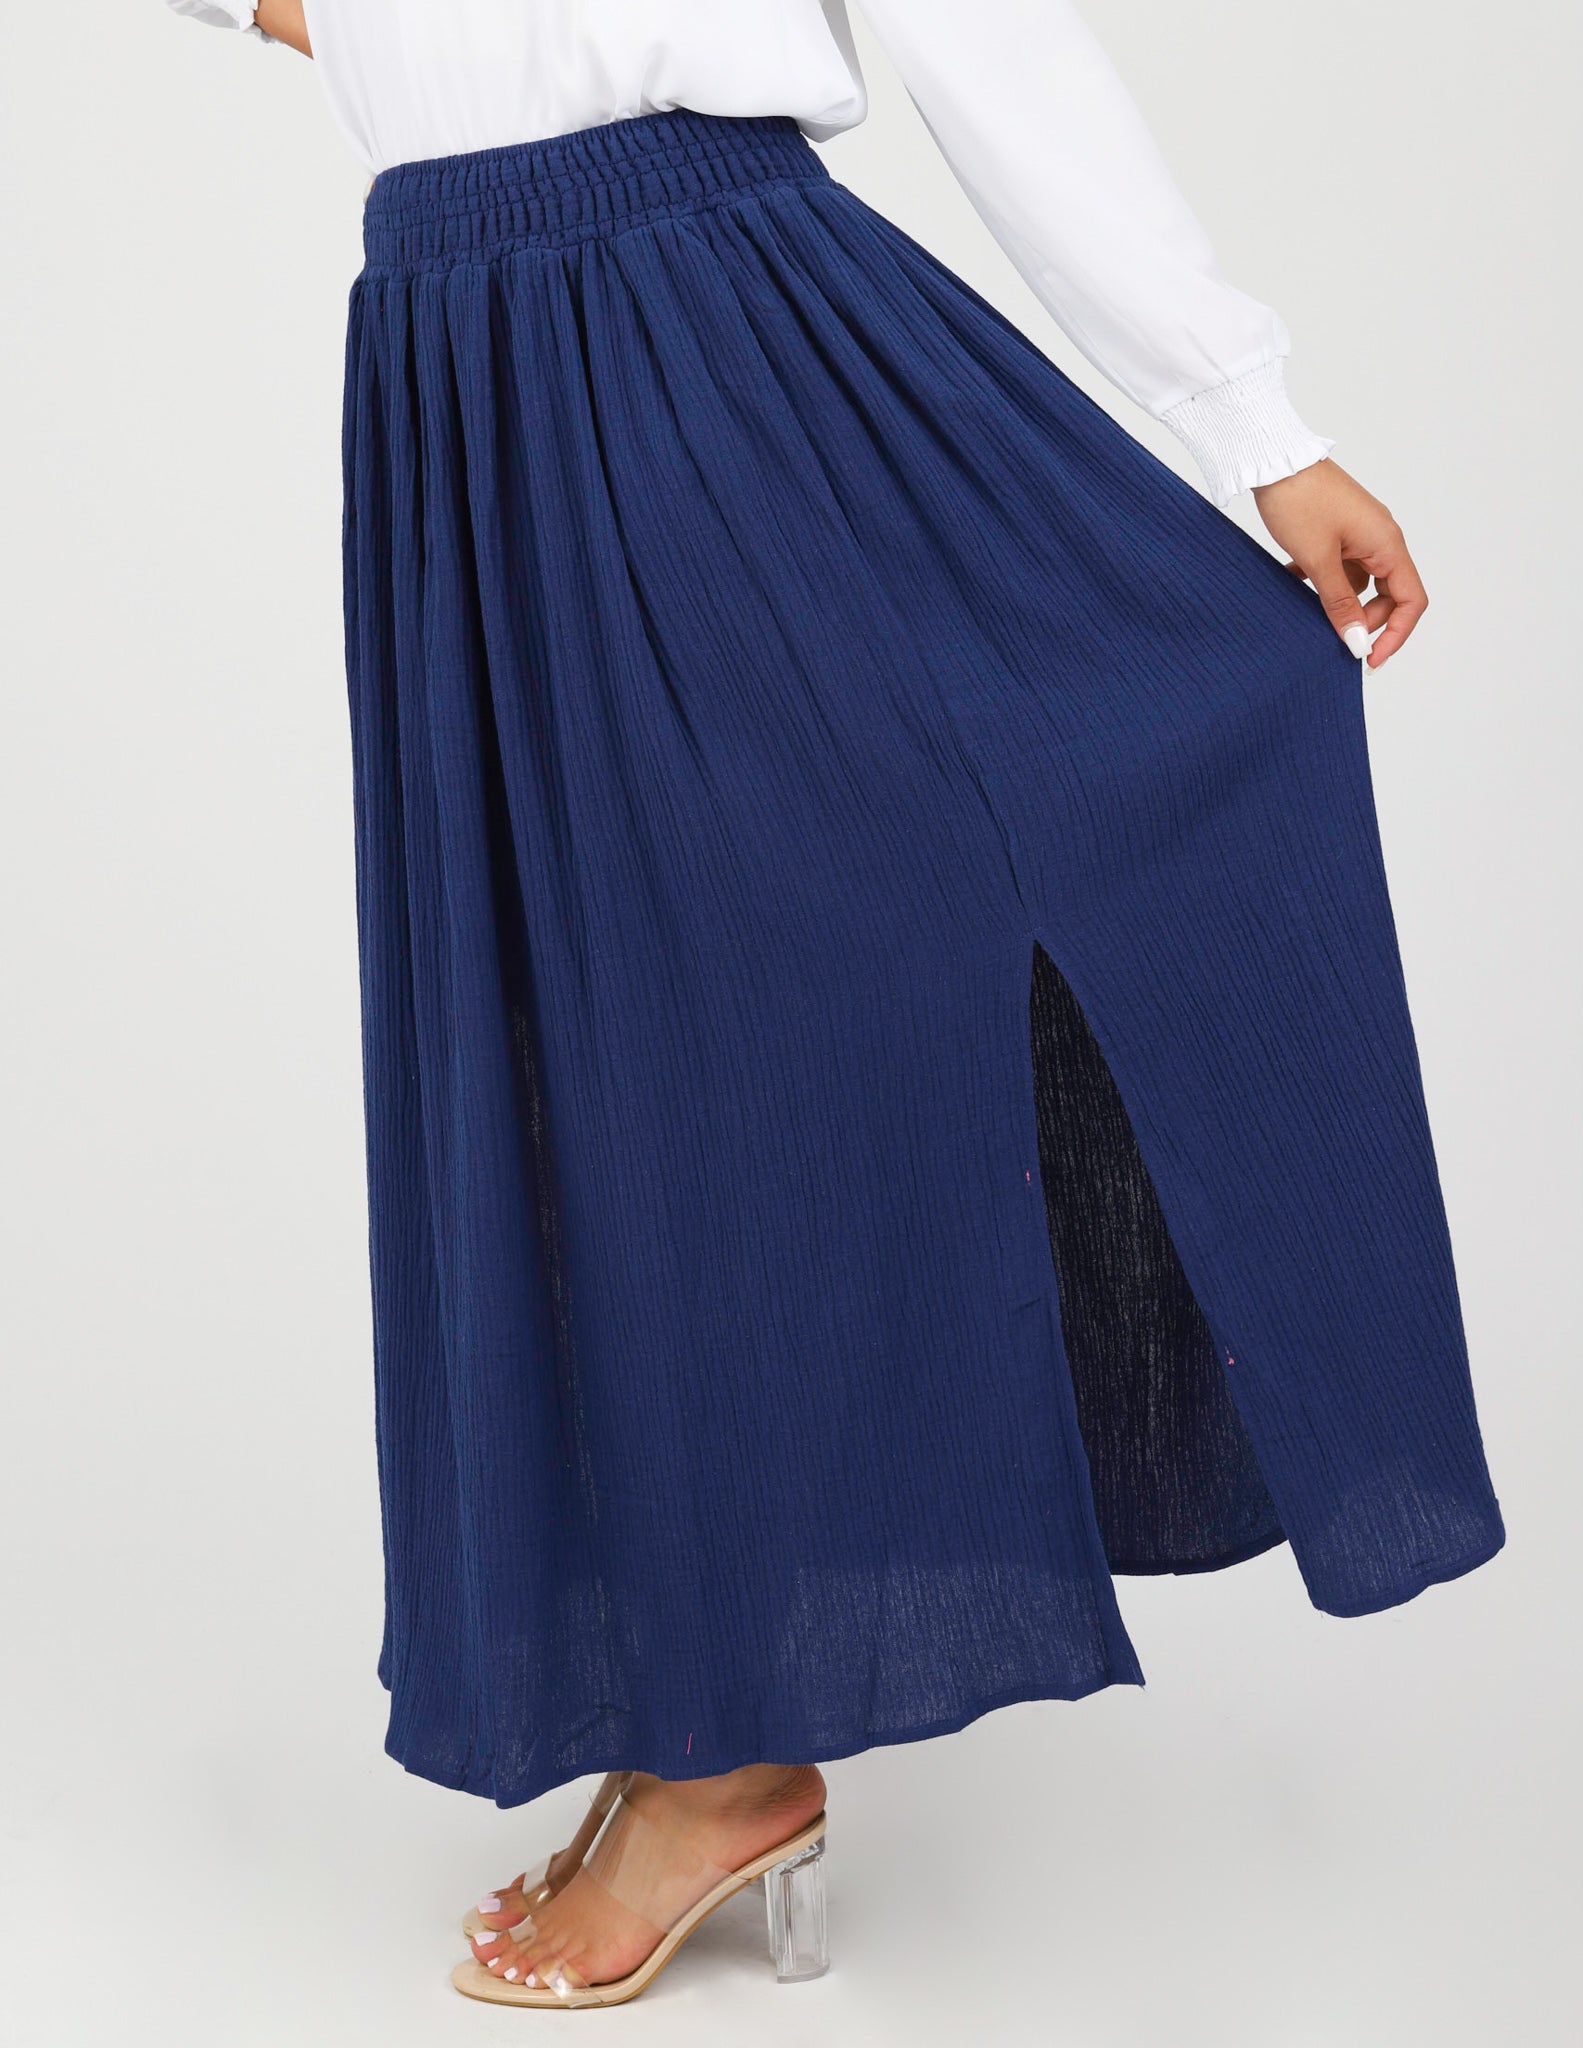 Skirts Online - Kaya Maxi Skirt | Modelle